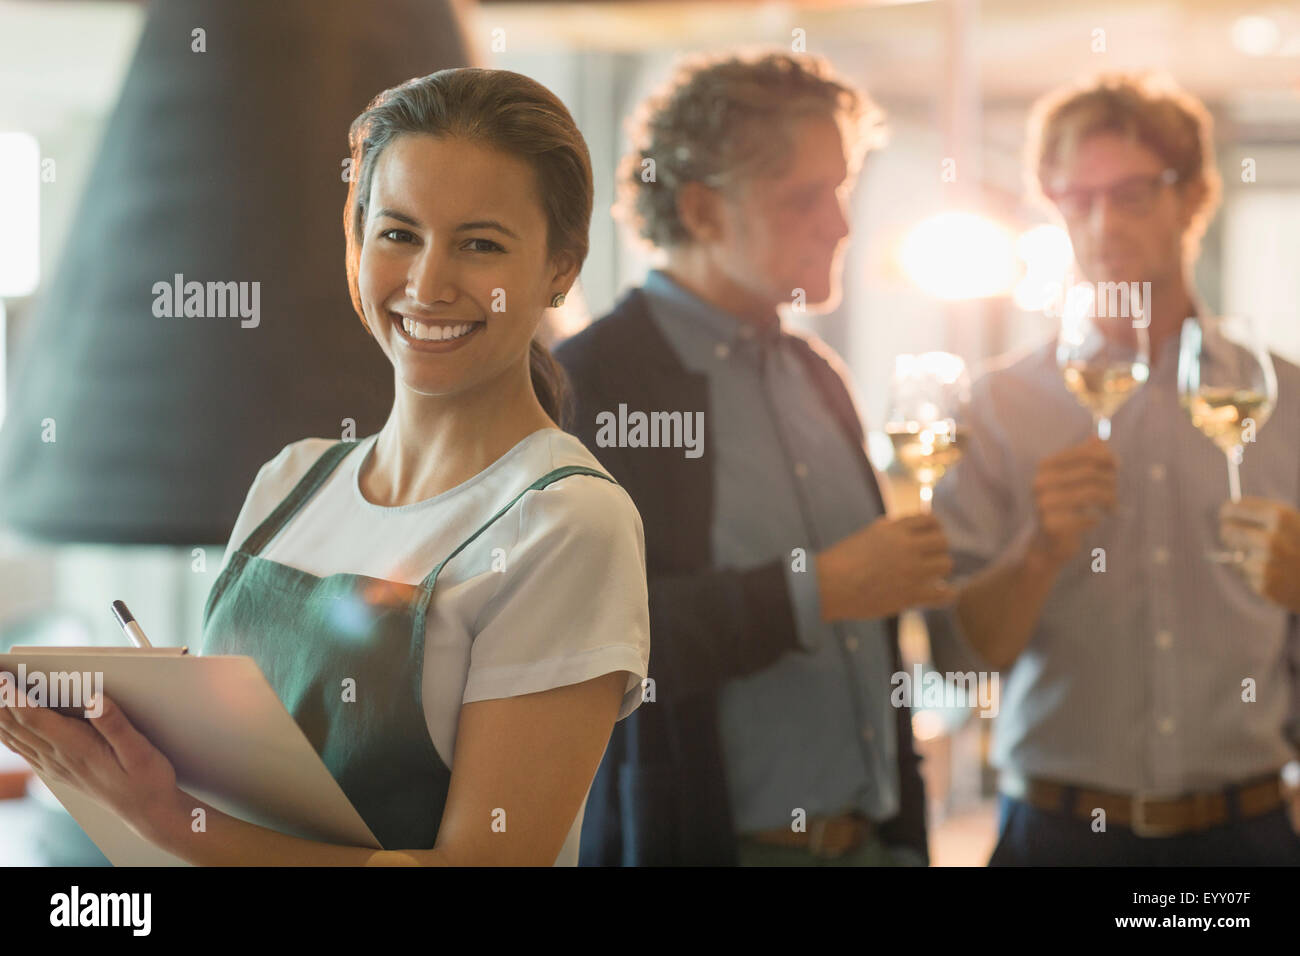 Retrato mujer sonriente con Portapapeles trabaja en la sala de cata de vinos Foto de stock